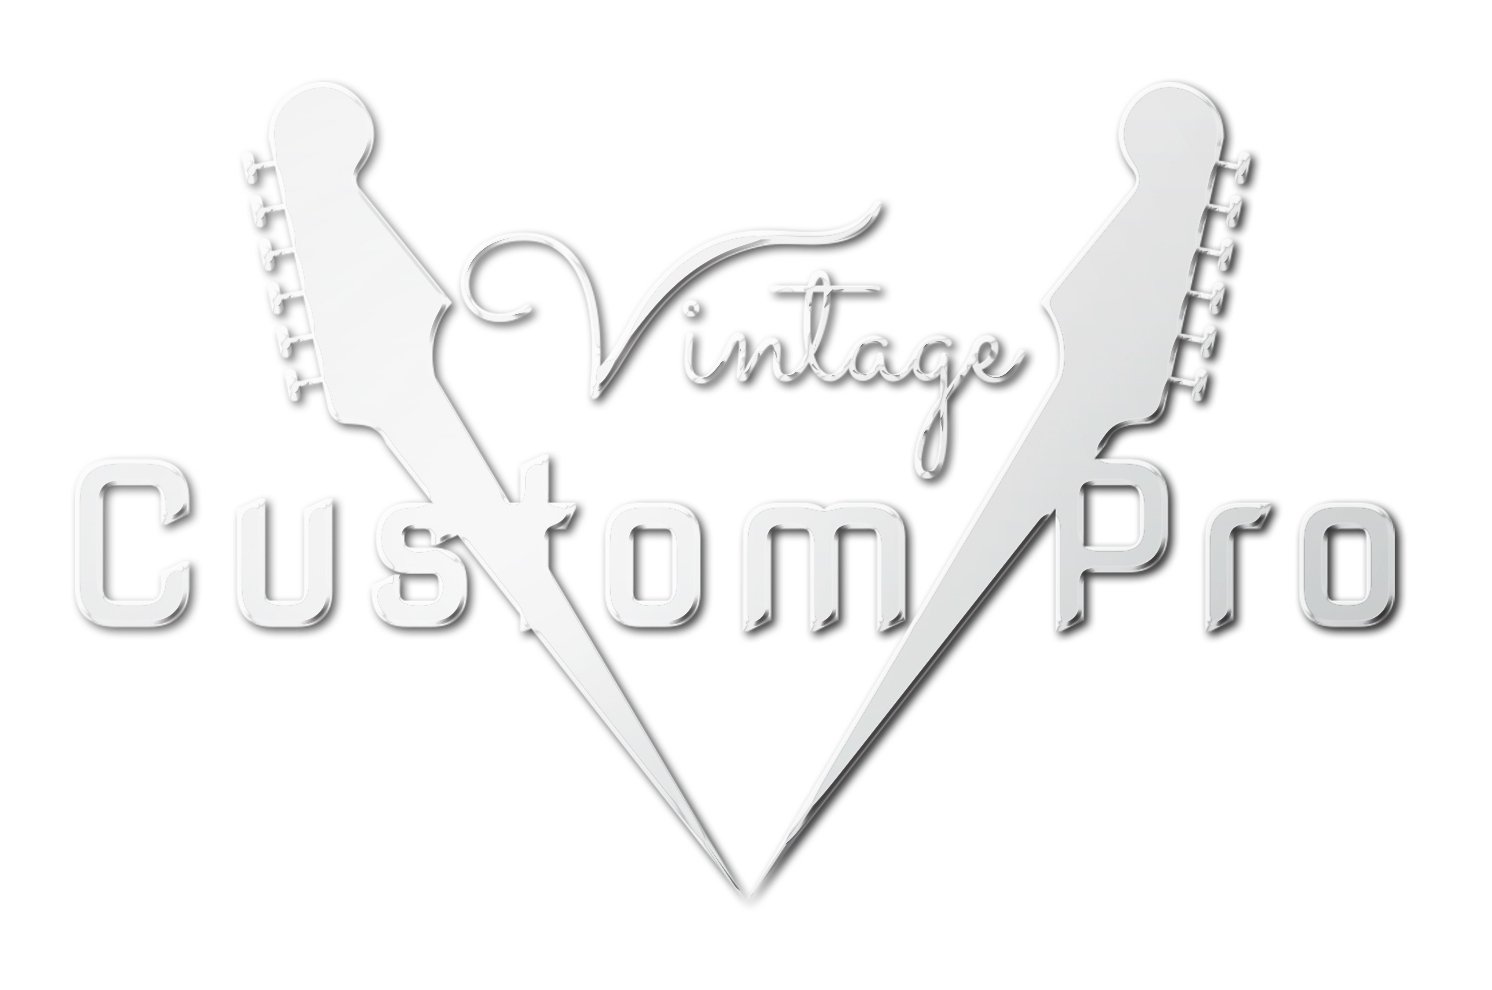 Vintage* V6M24VG Electric Guitar, Electric Guitar for sale at Richards Guitars.